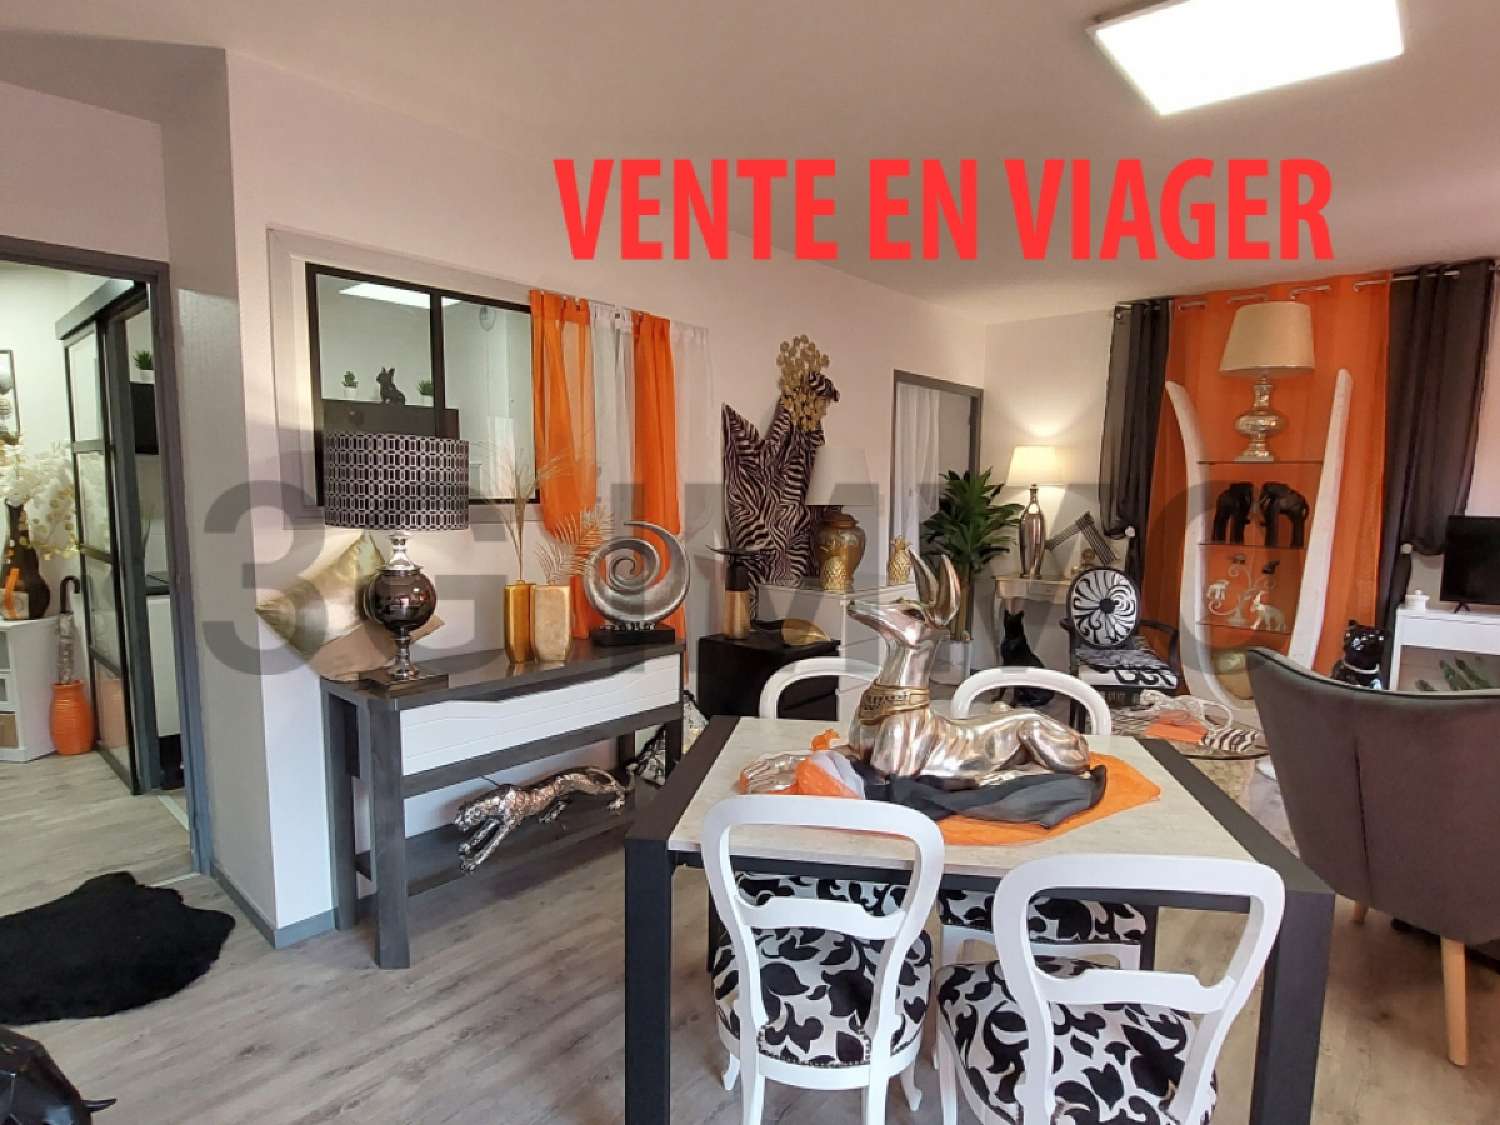  à vendre appartement Montbazens Aveyron 1